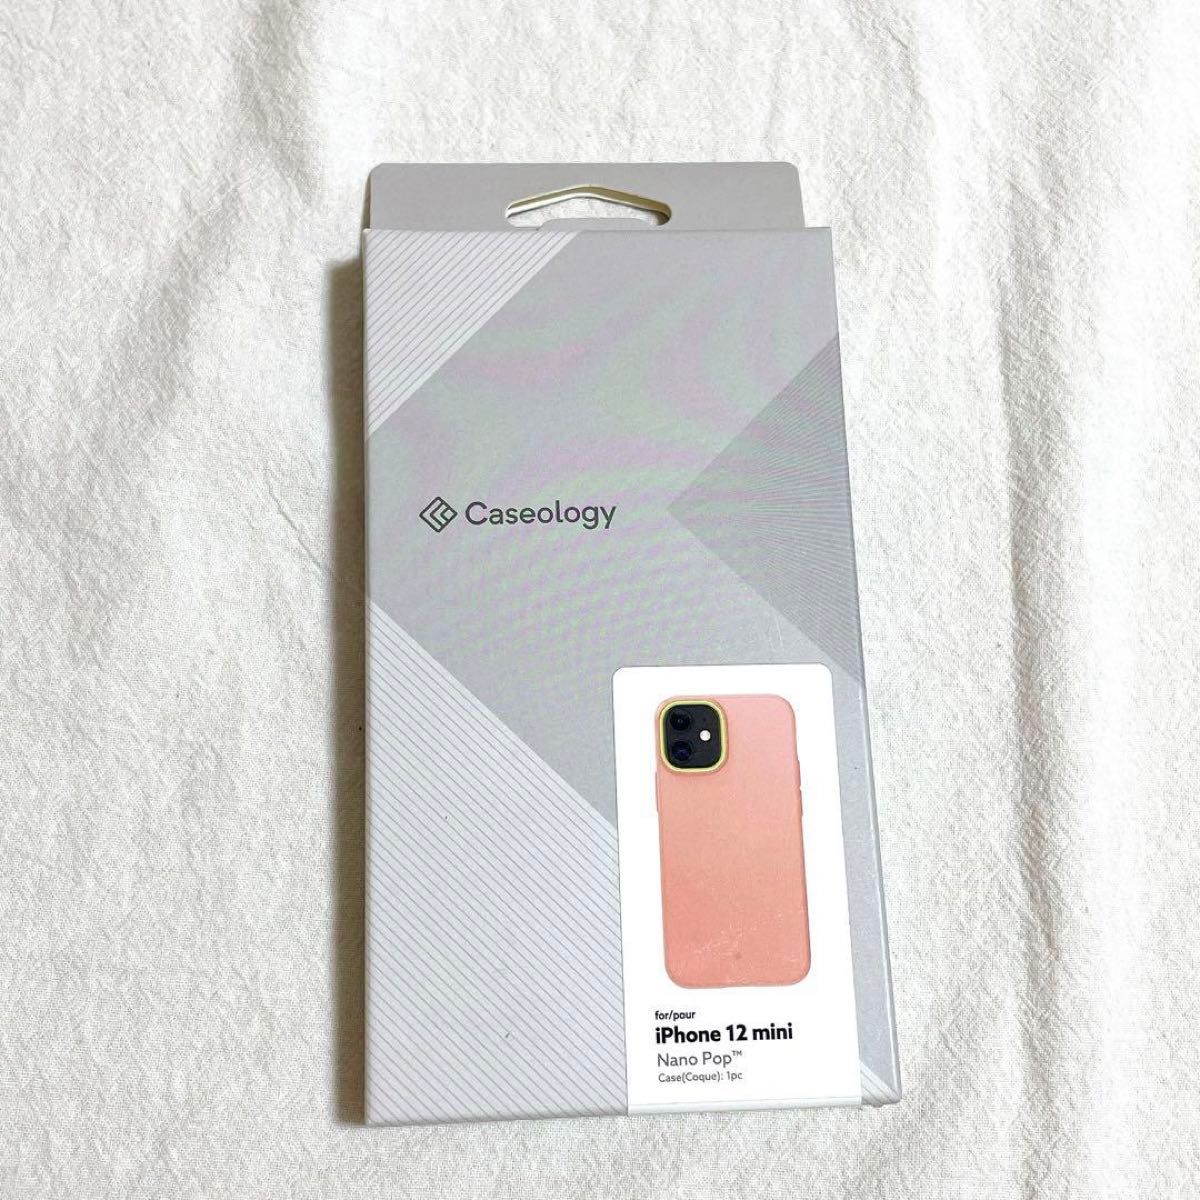 iPhone12 mini スマのケース 5.4インチ シリコン ピンク